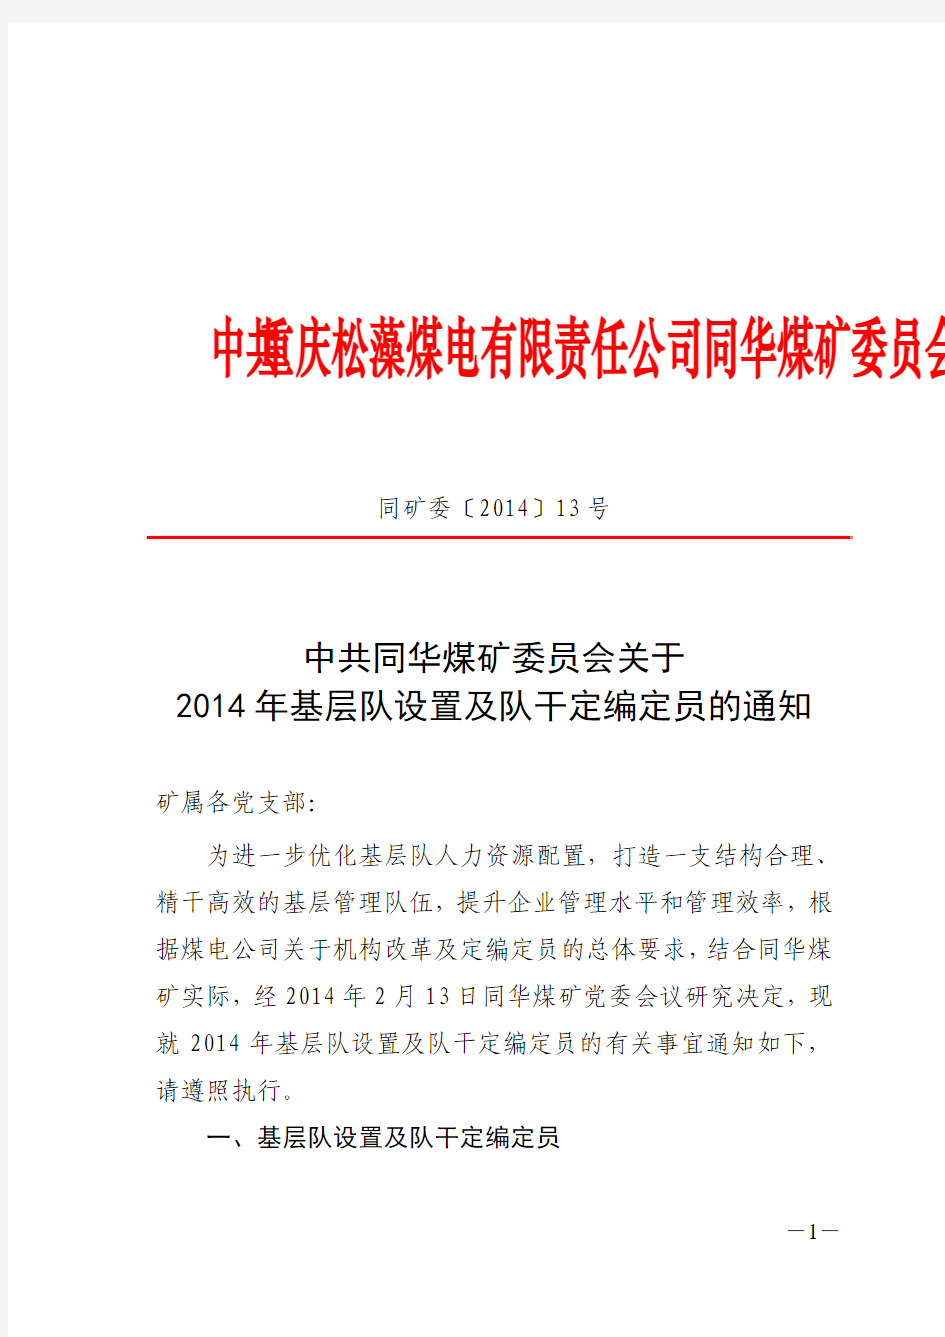 中共同华煤矿委员会关于2014年基层队设置及队干定编定员的通知[1]